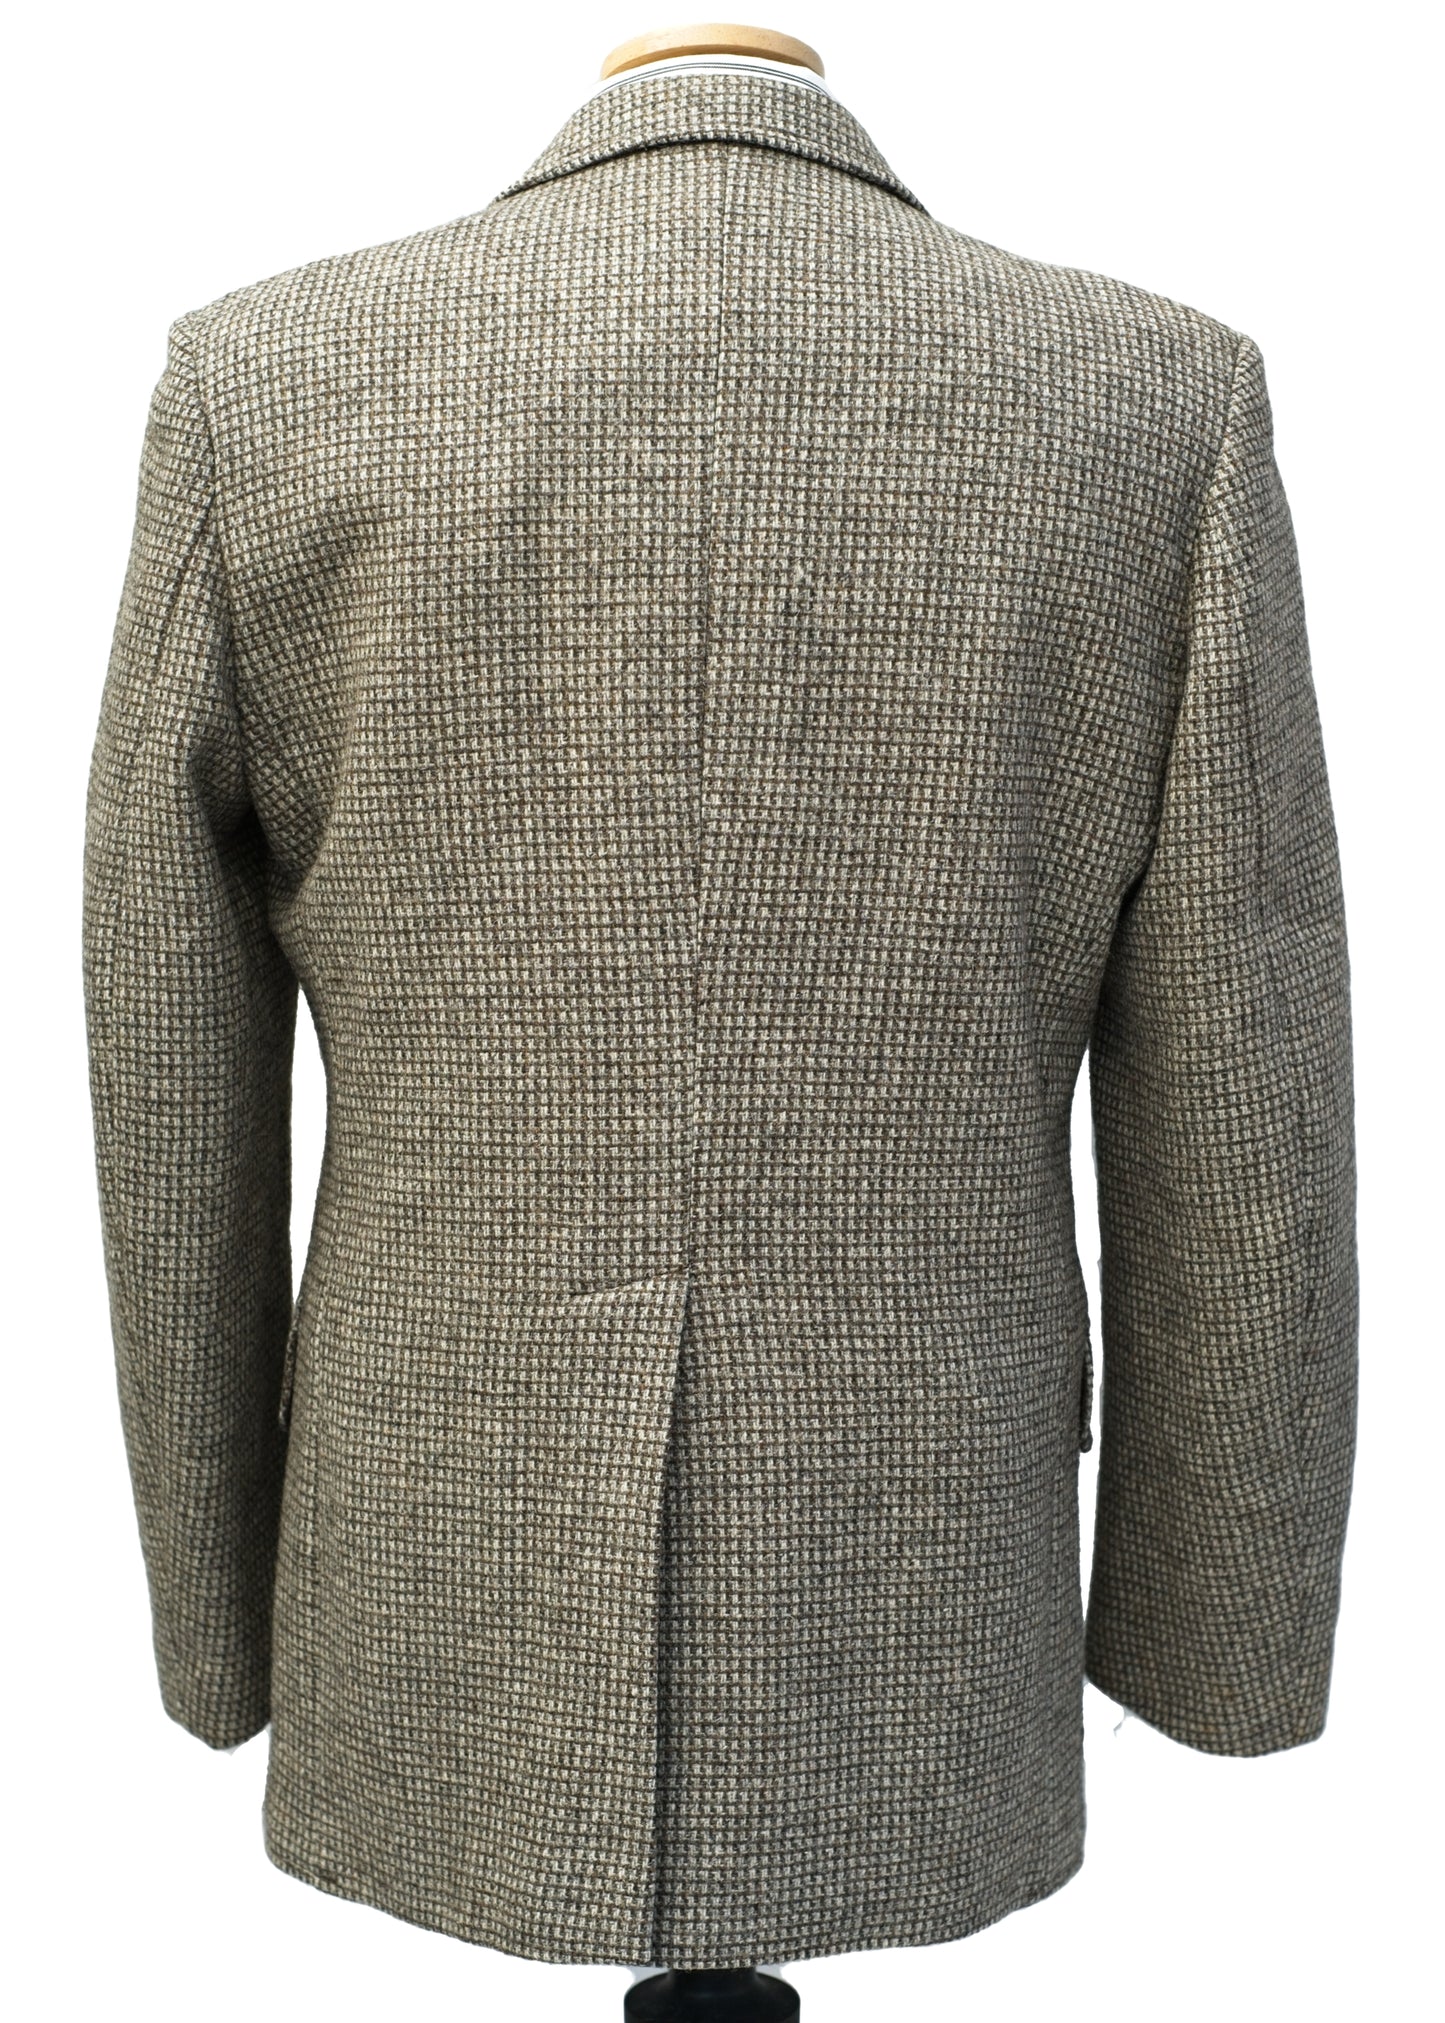 Vintage 70s Tweed Half Norfolk Sports Jacket • St Michael